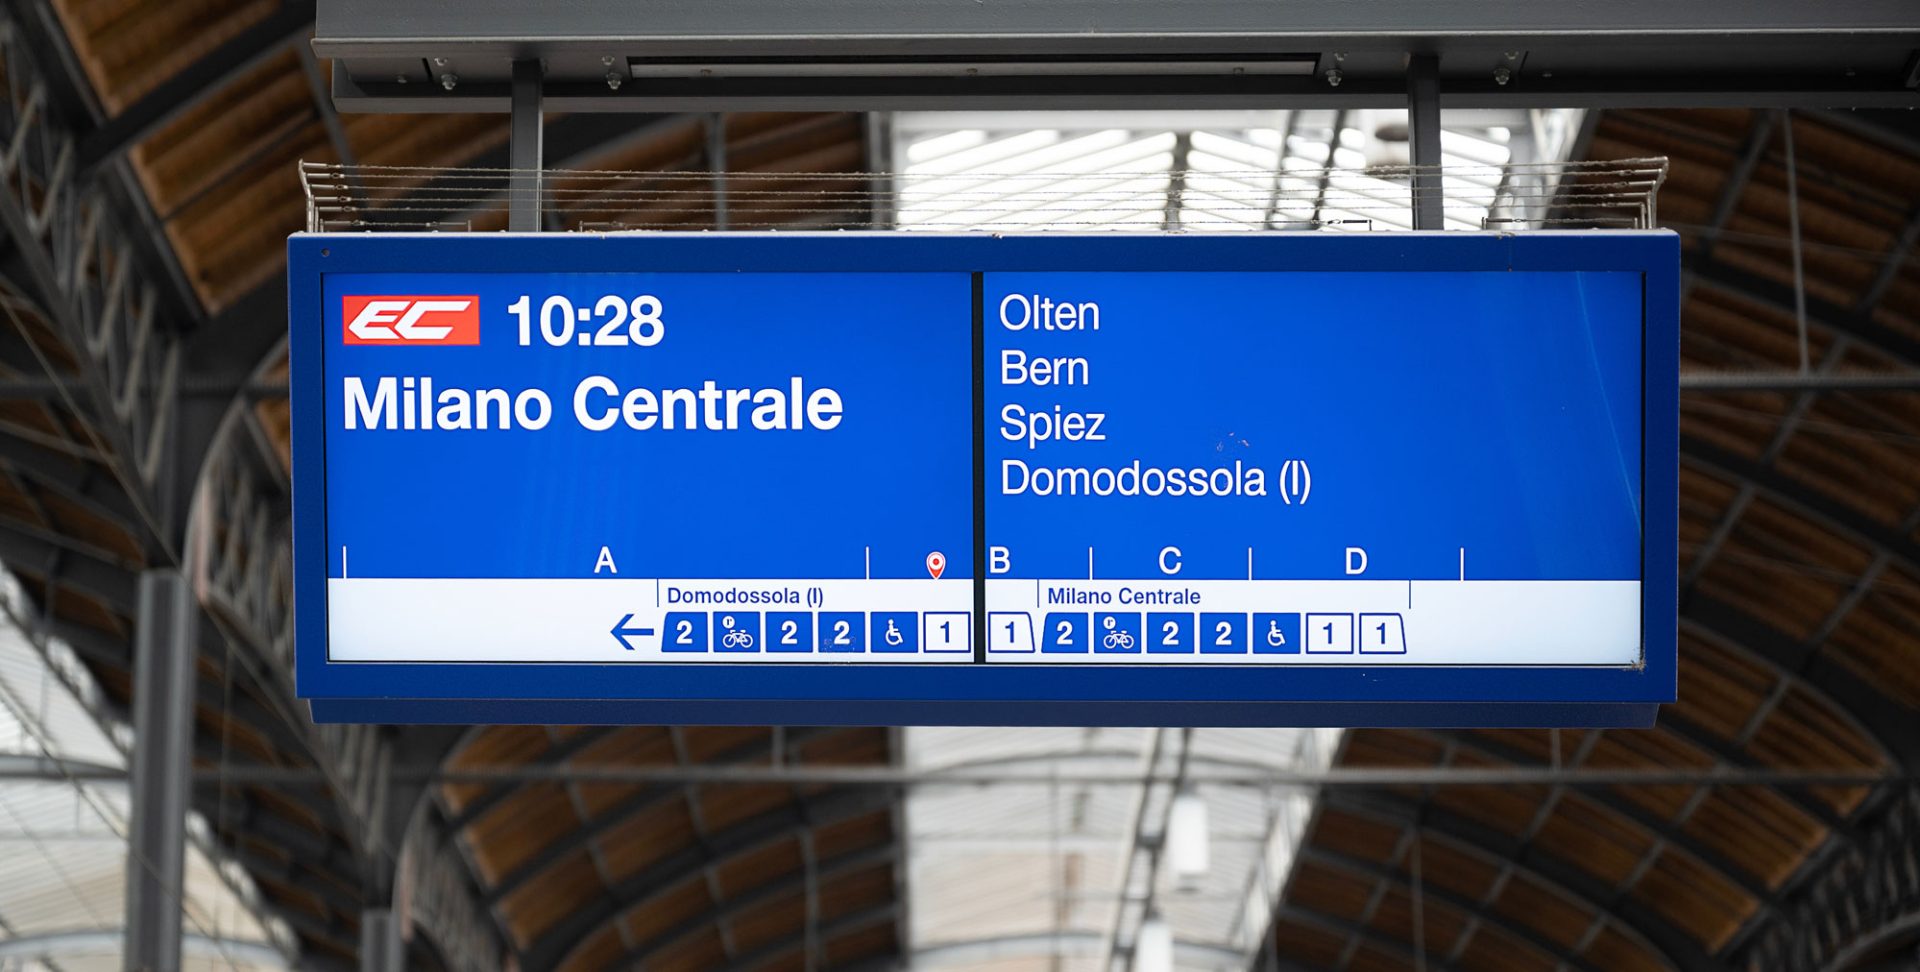 Das neue Layout des Perronanzeigers am Bahnhof Basel SBB_Manuela Vonwiller_11 4 23